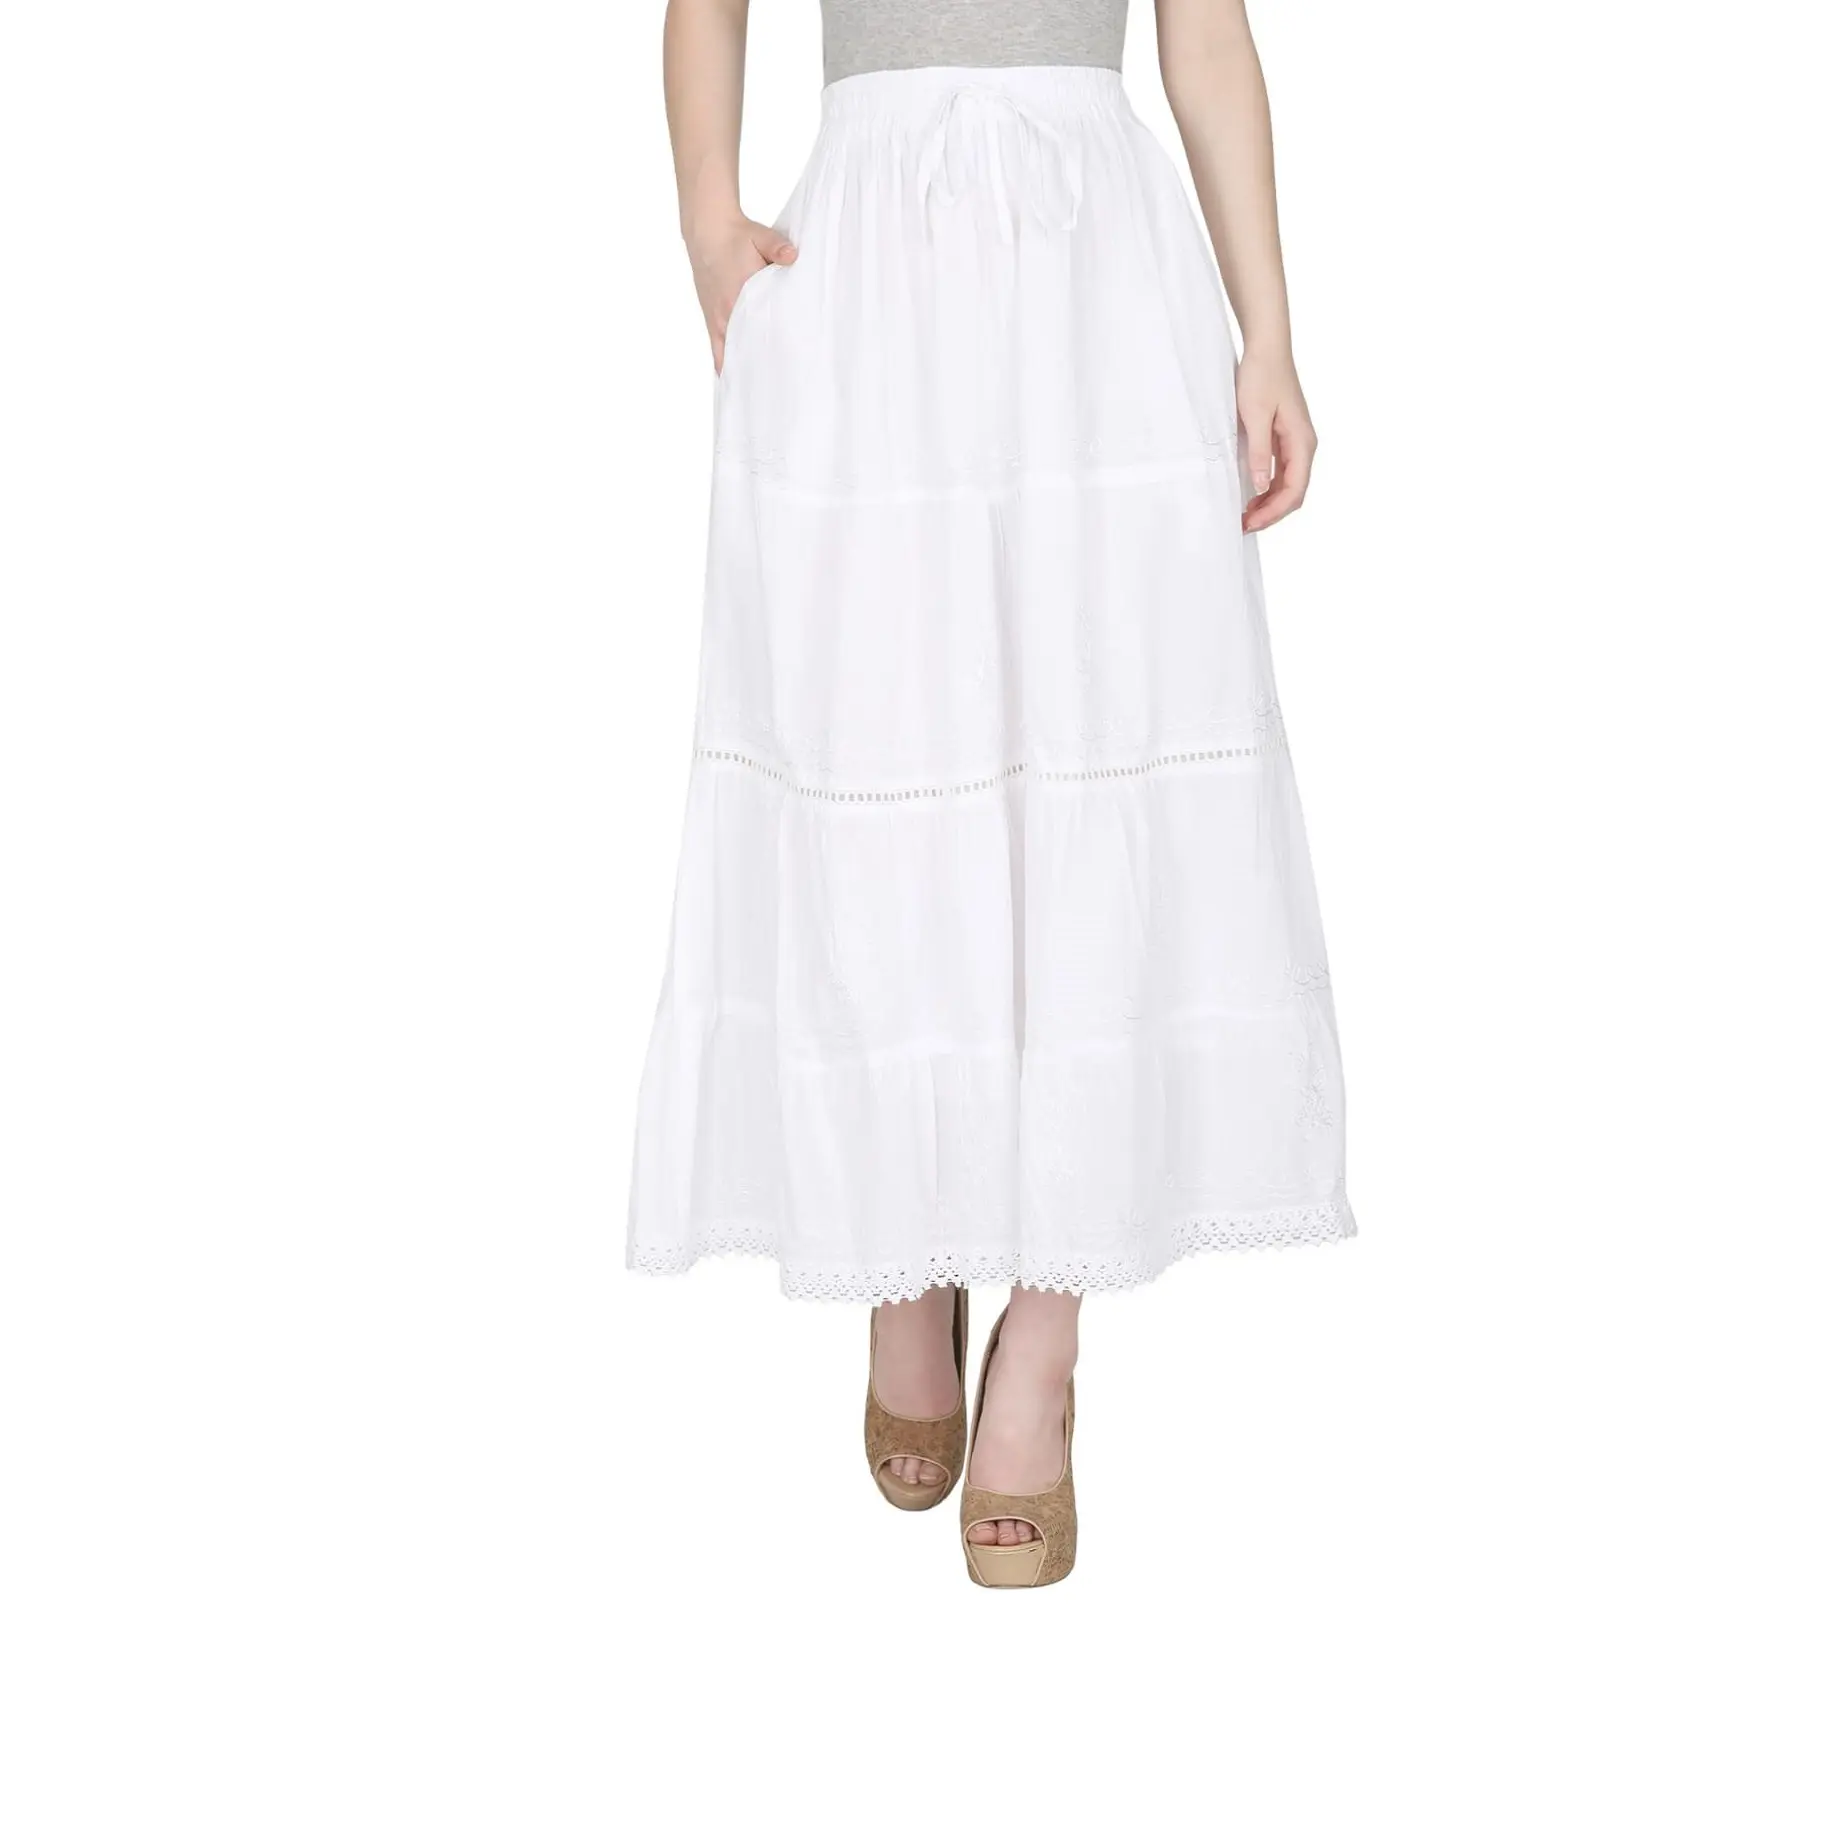 Falda gitana blanca de algodón 100% para mujer, falda larga atractiva/falda informal a la moda, precio al por mayor